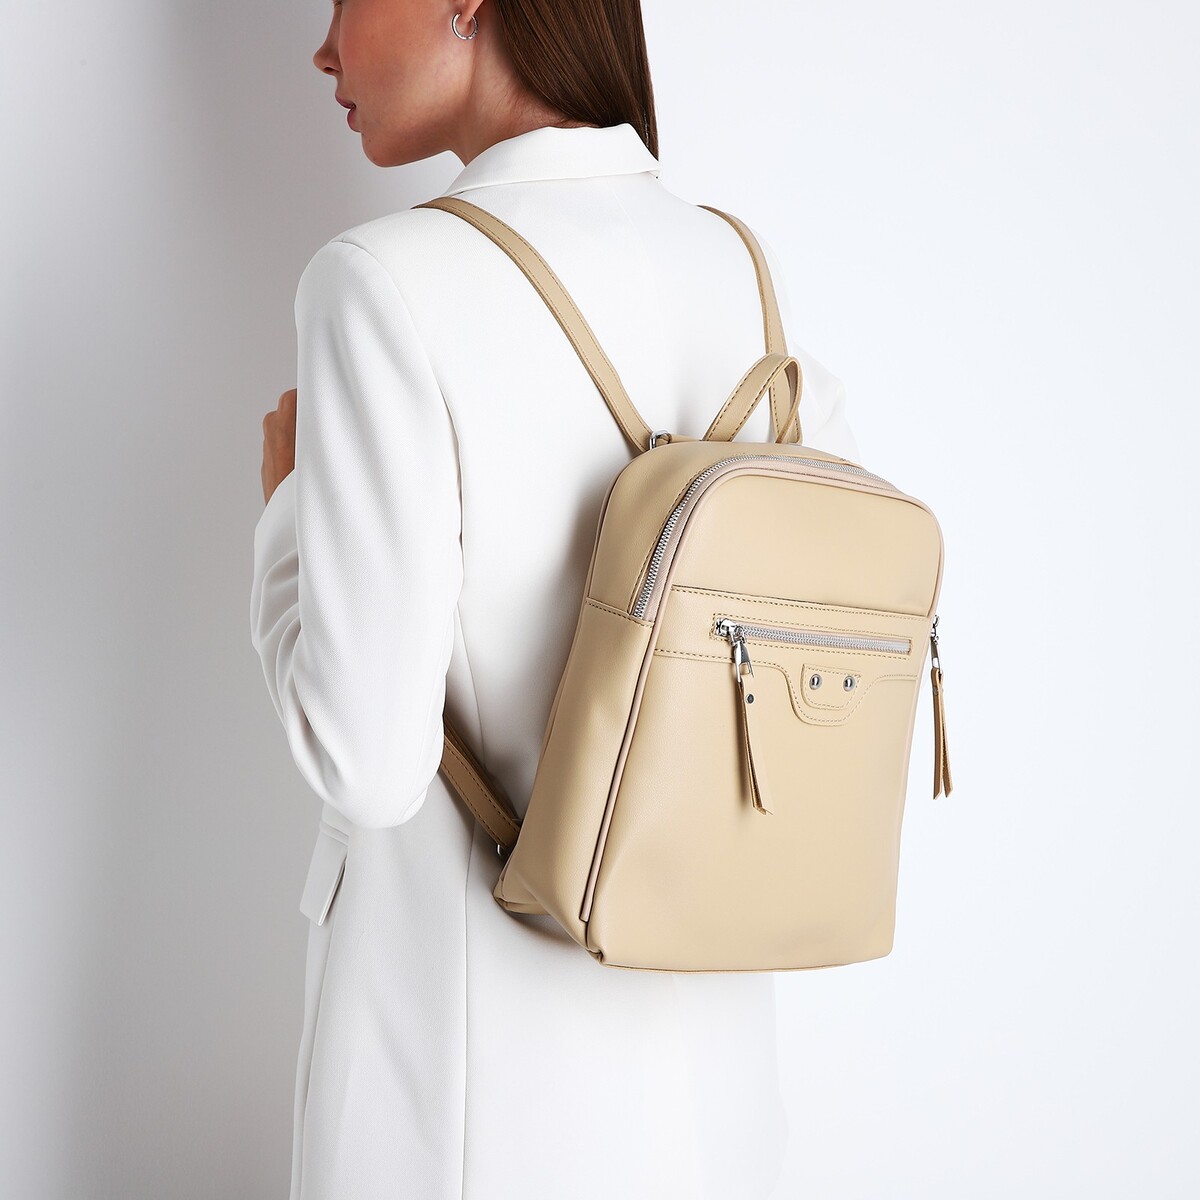 Рюкзак женский из искусственной кожи на молнии, 3 кармана, цвет бежевый рюкзак школьный из текстиля 3 кармана белый бежевый